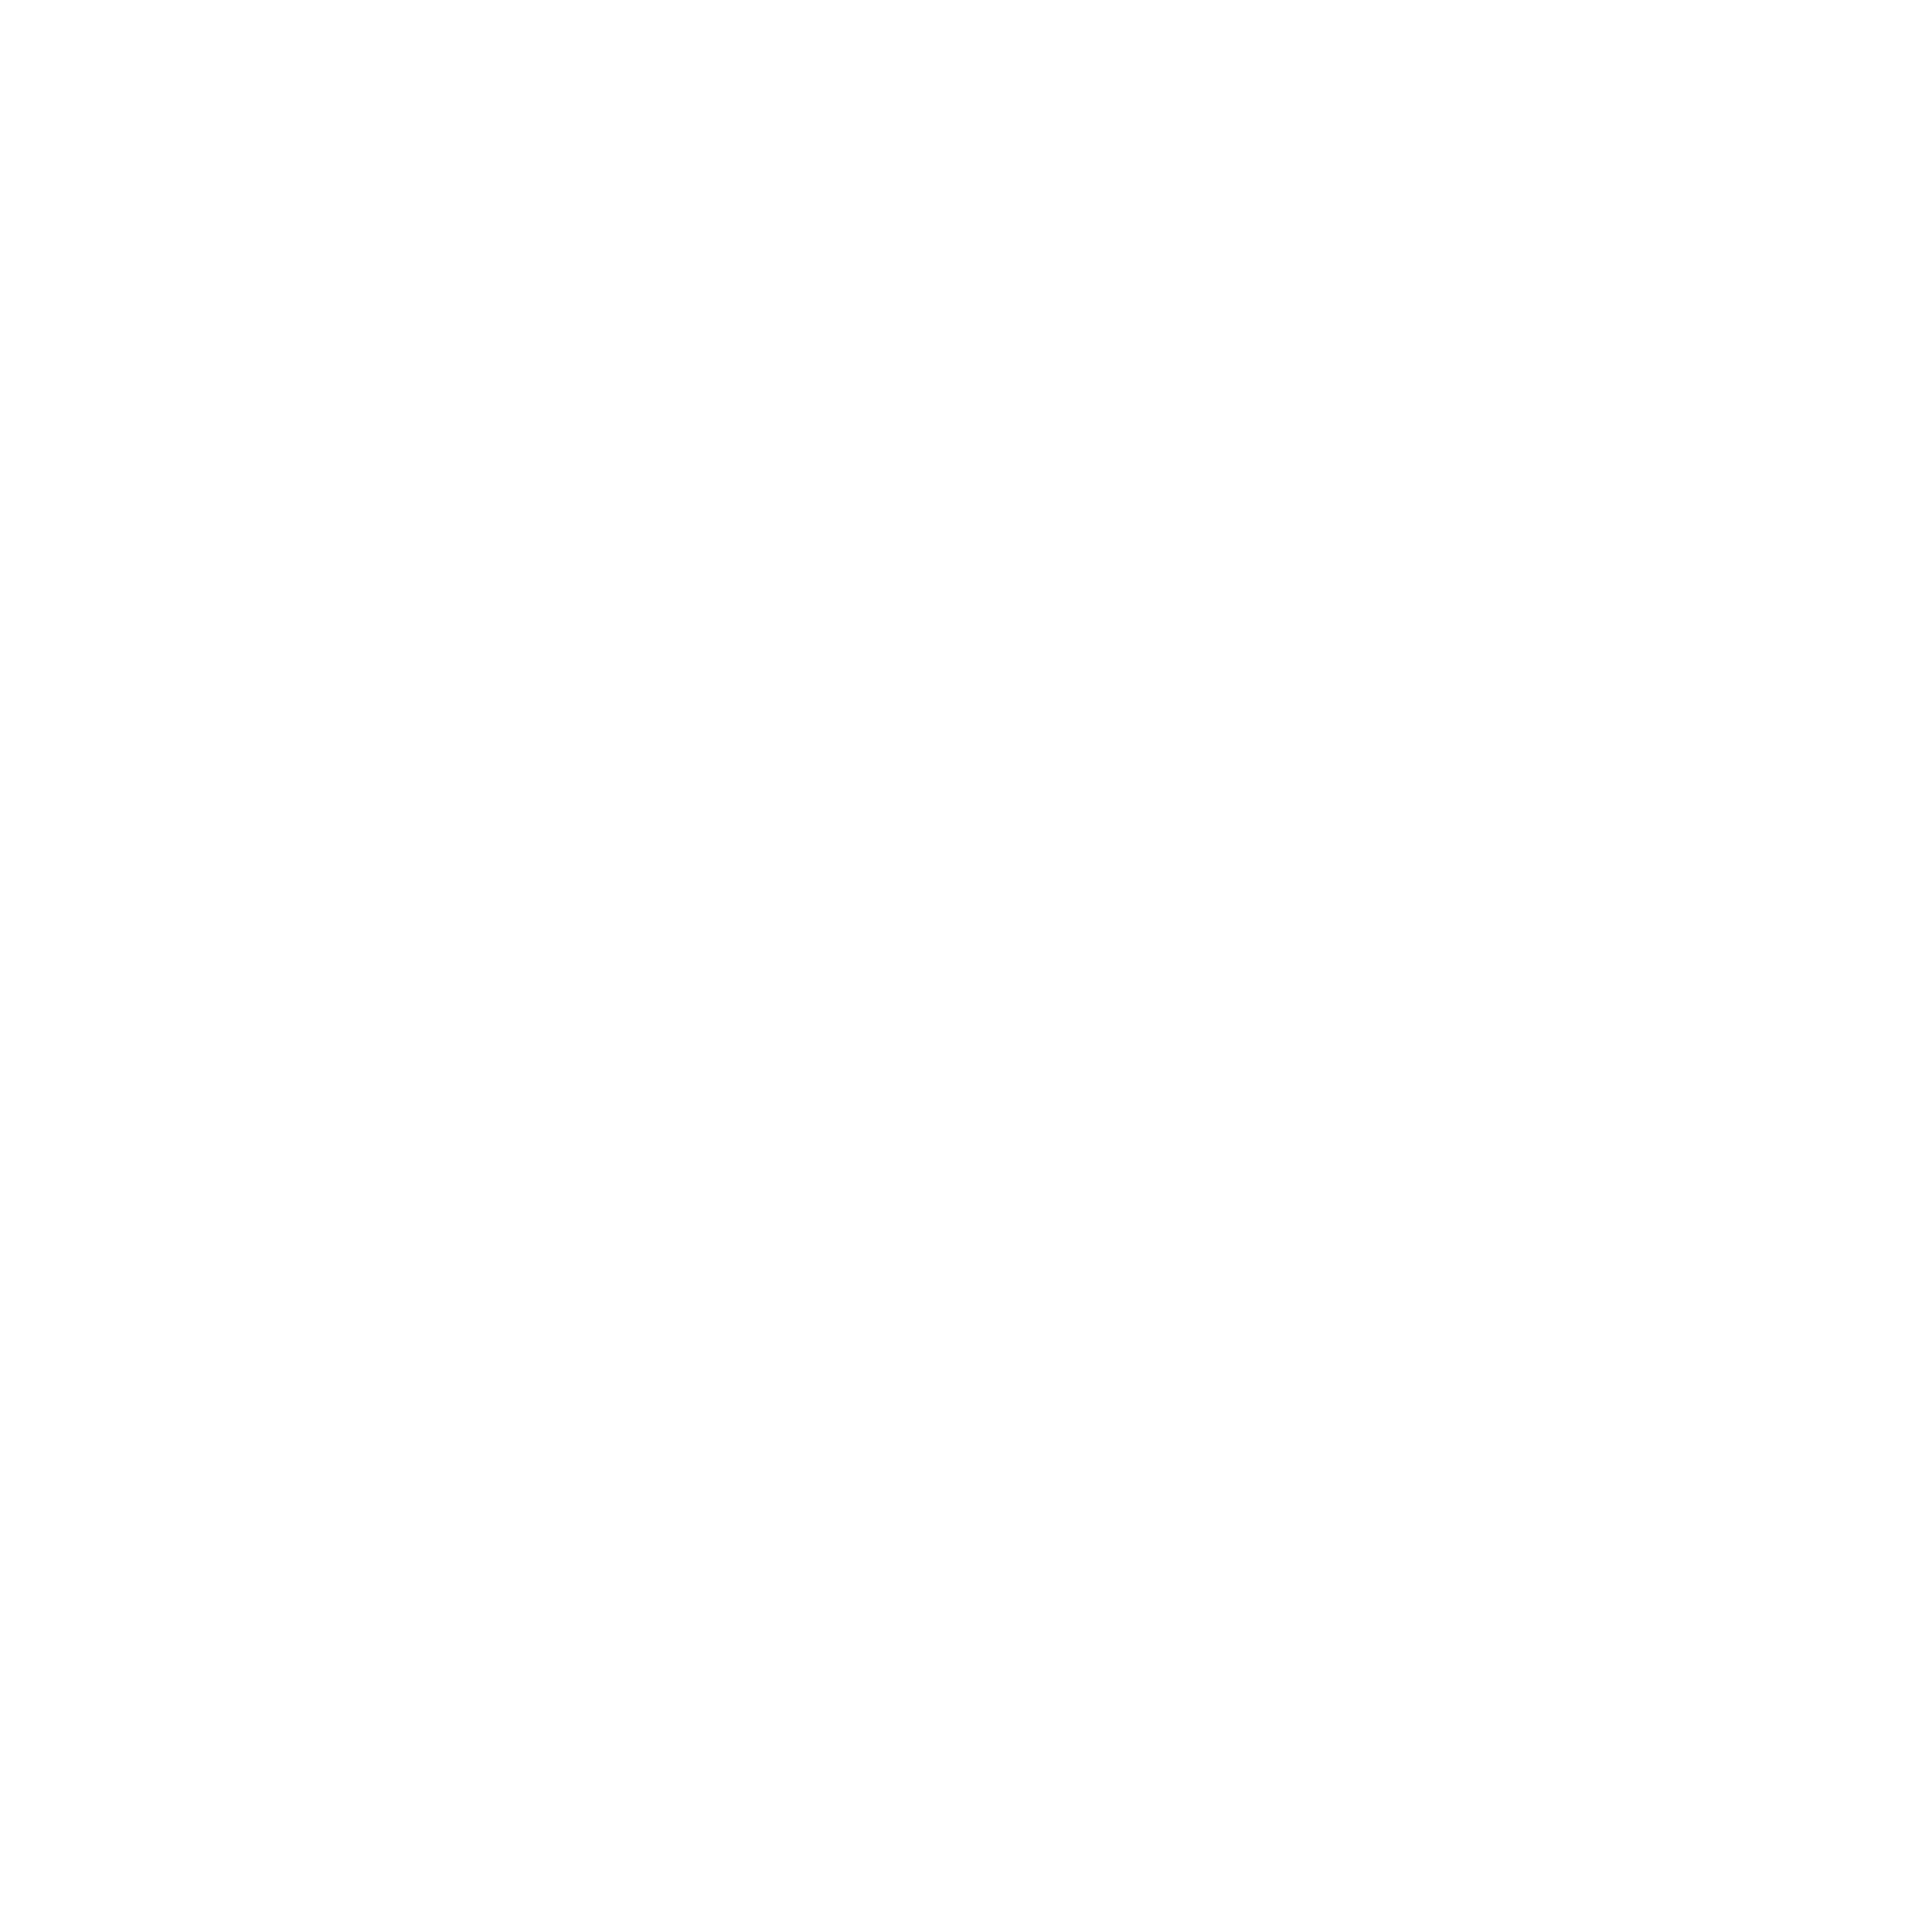 Distintivo municipal de responsabilidad familiar y comunitaria